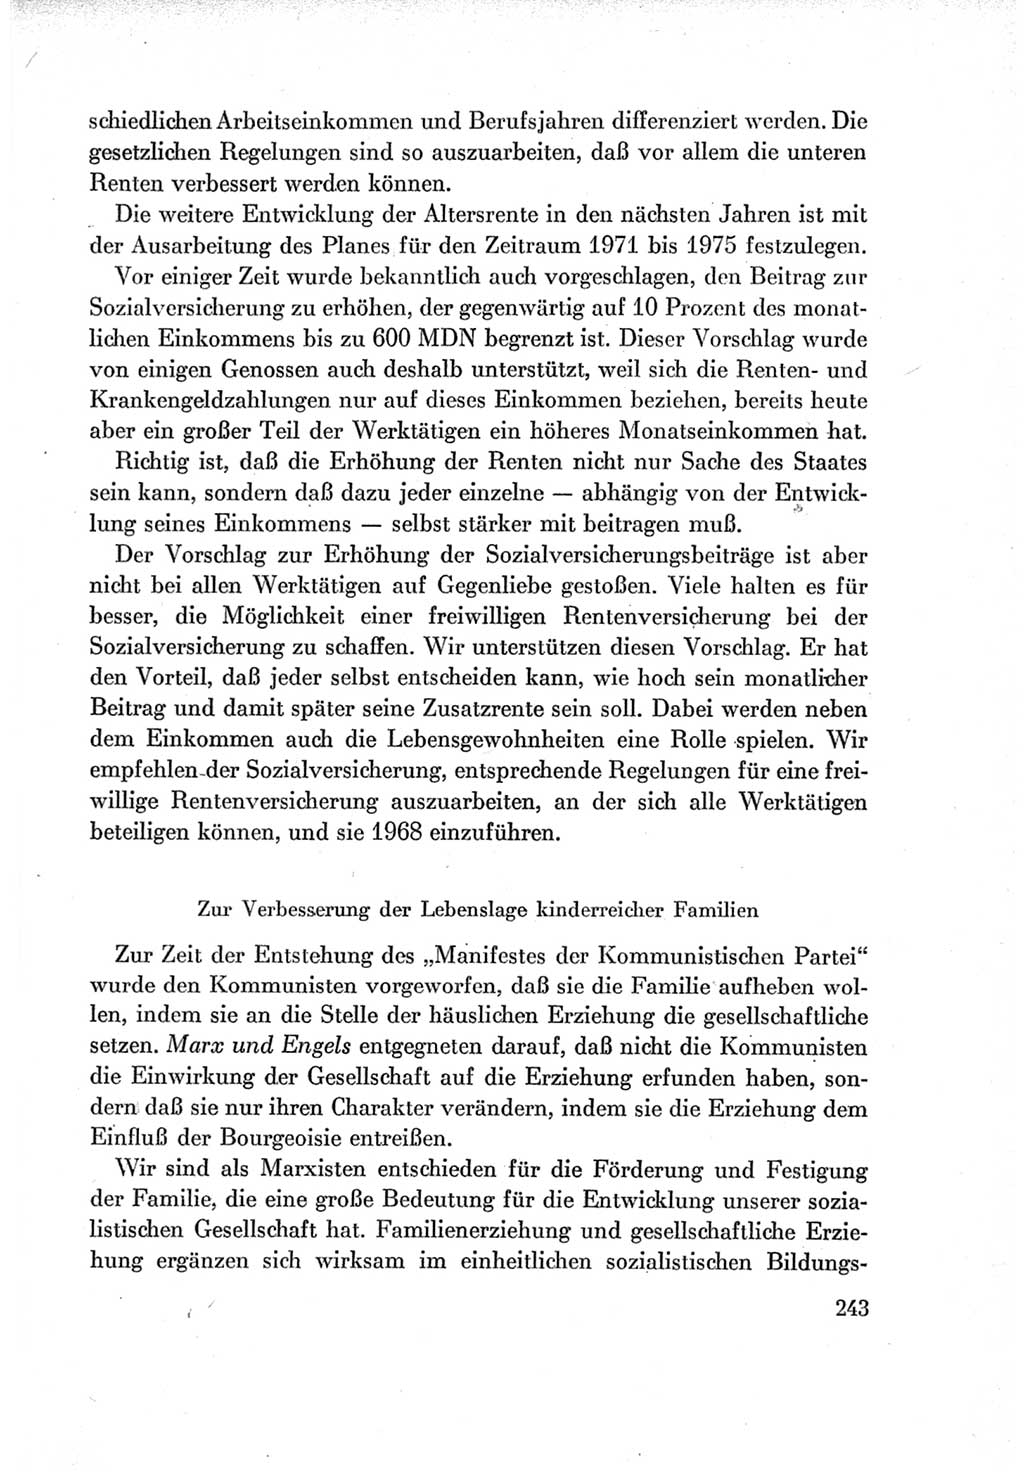 Protokoll der Verhandlungen des Ⅶ. Parteitages der Sozialistischen Einheitspartei Deutschlands (SED) [Deutsche Demokratische Republik (DDR)] 1967, Band Ⅰ, Seite 243 (Prot. Verh. Ⅶ. PT SED DDR 1967, Bd. Ⅰ, S. 243)